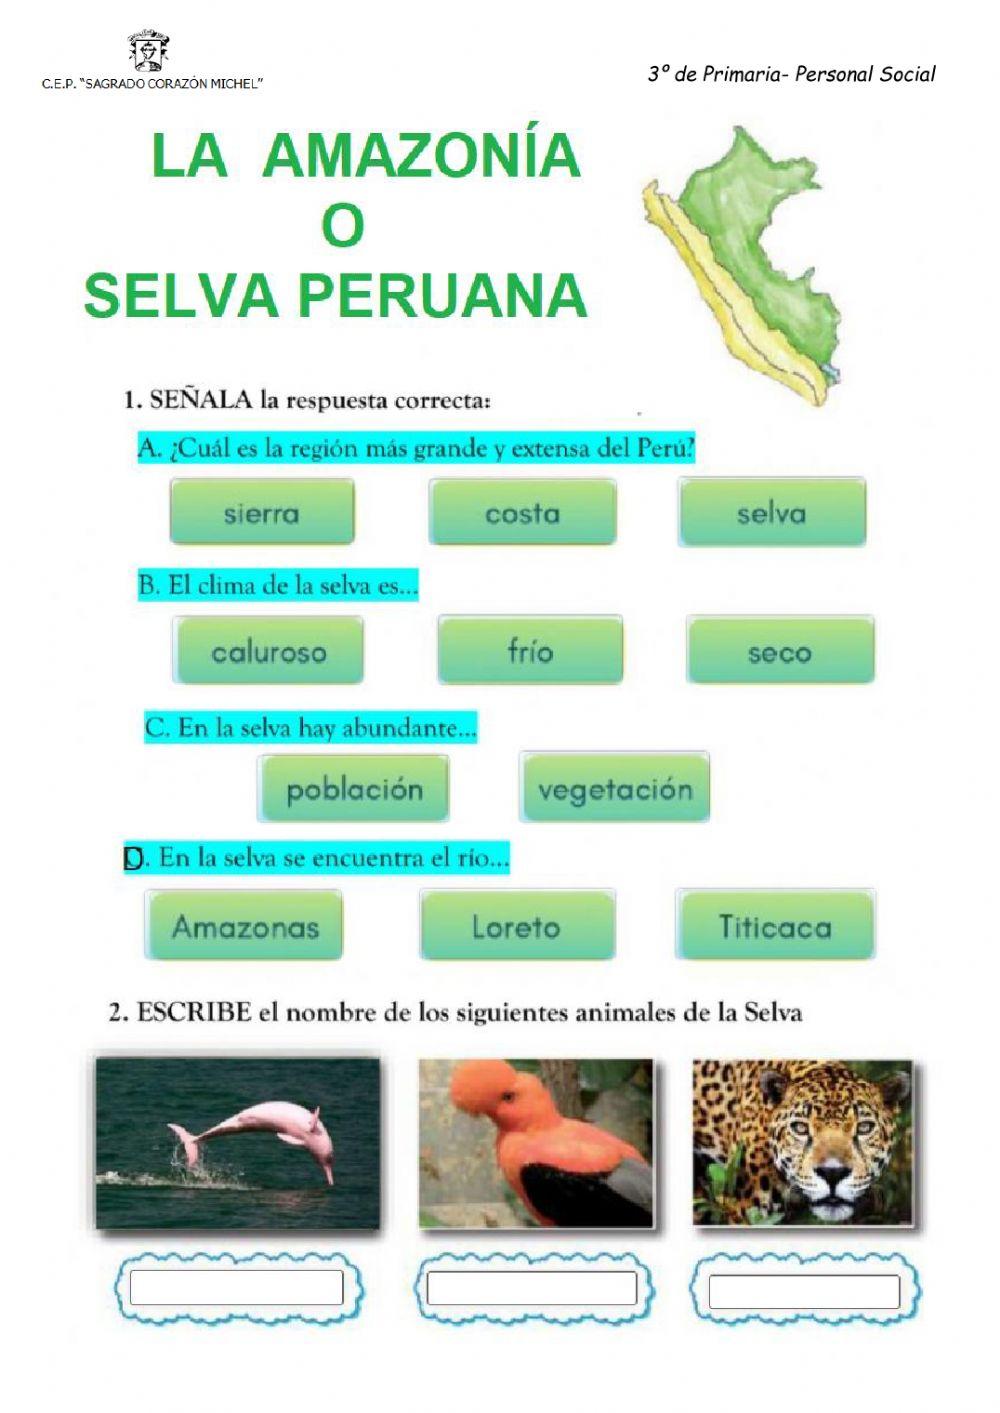 La selva peruana o amazonia